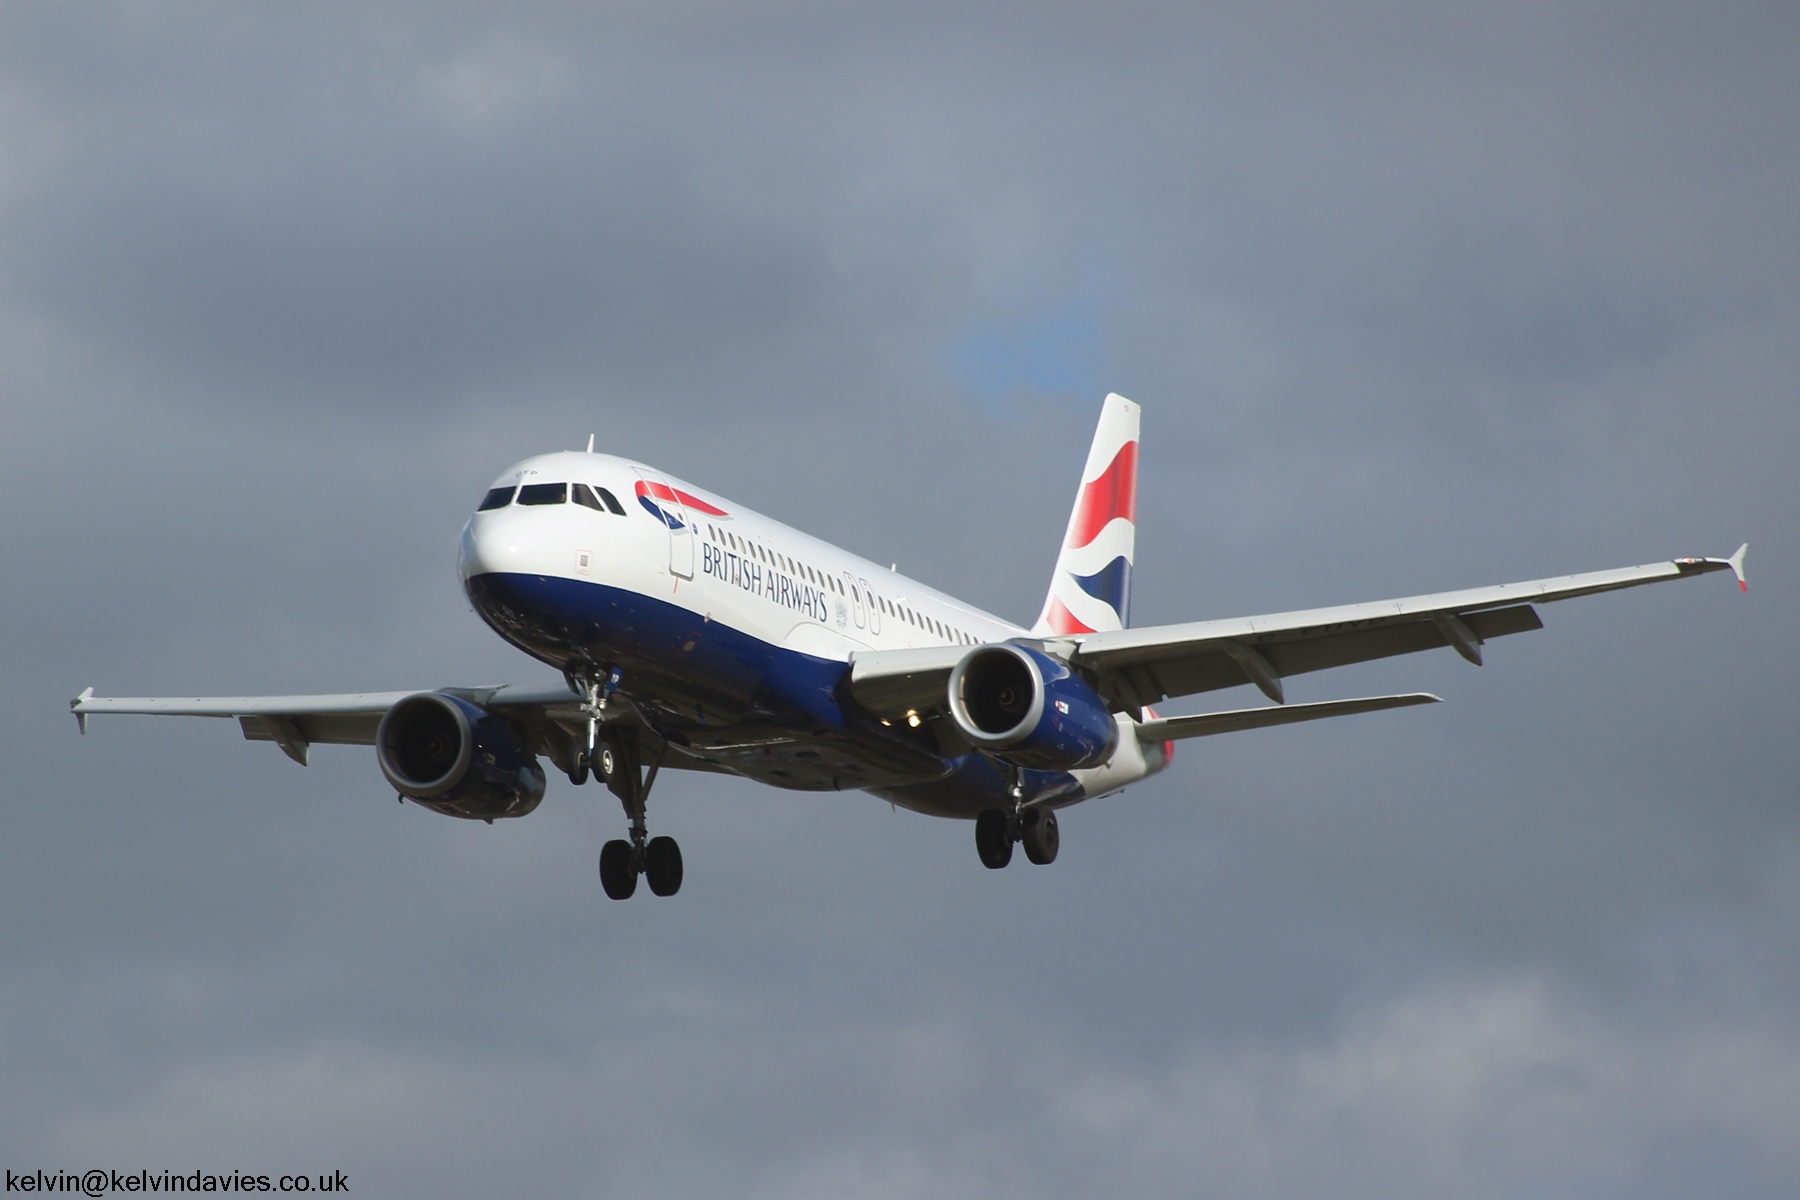 British Airways A320 G-EUYP